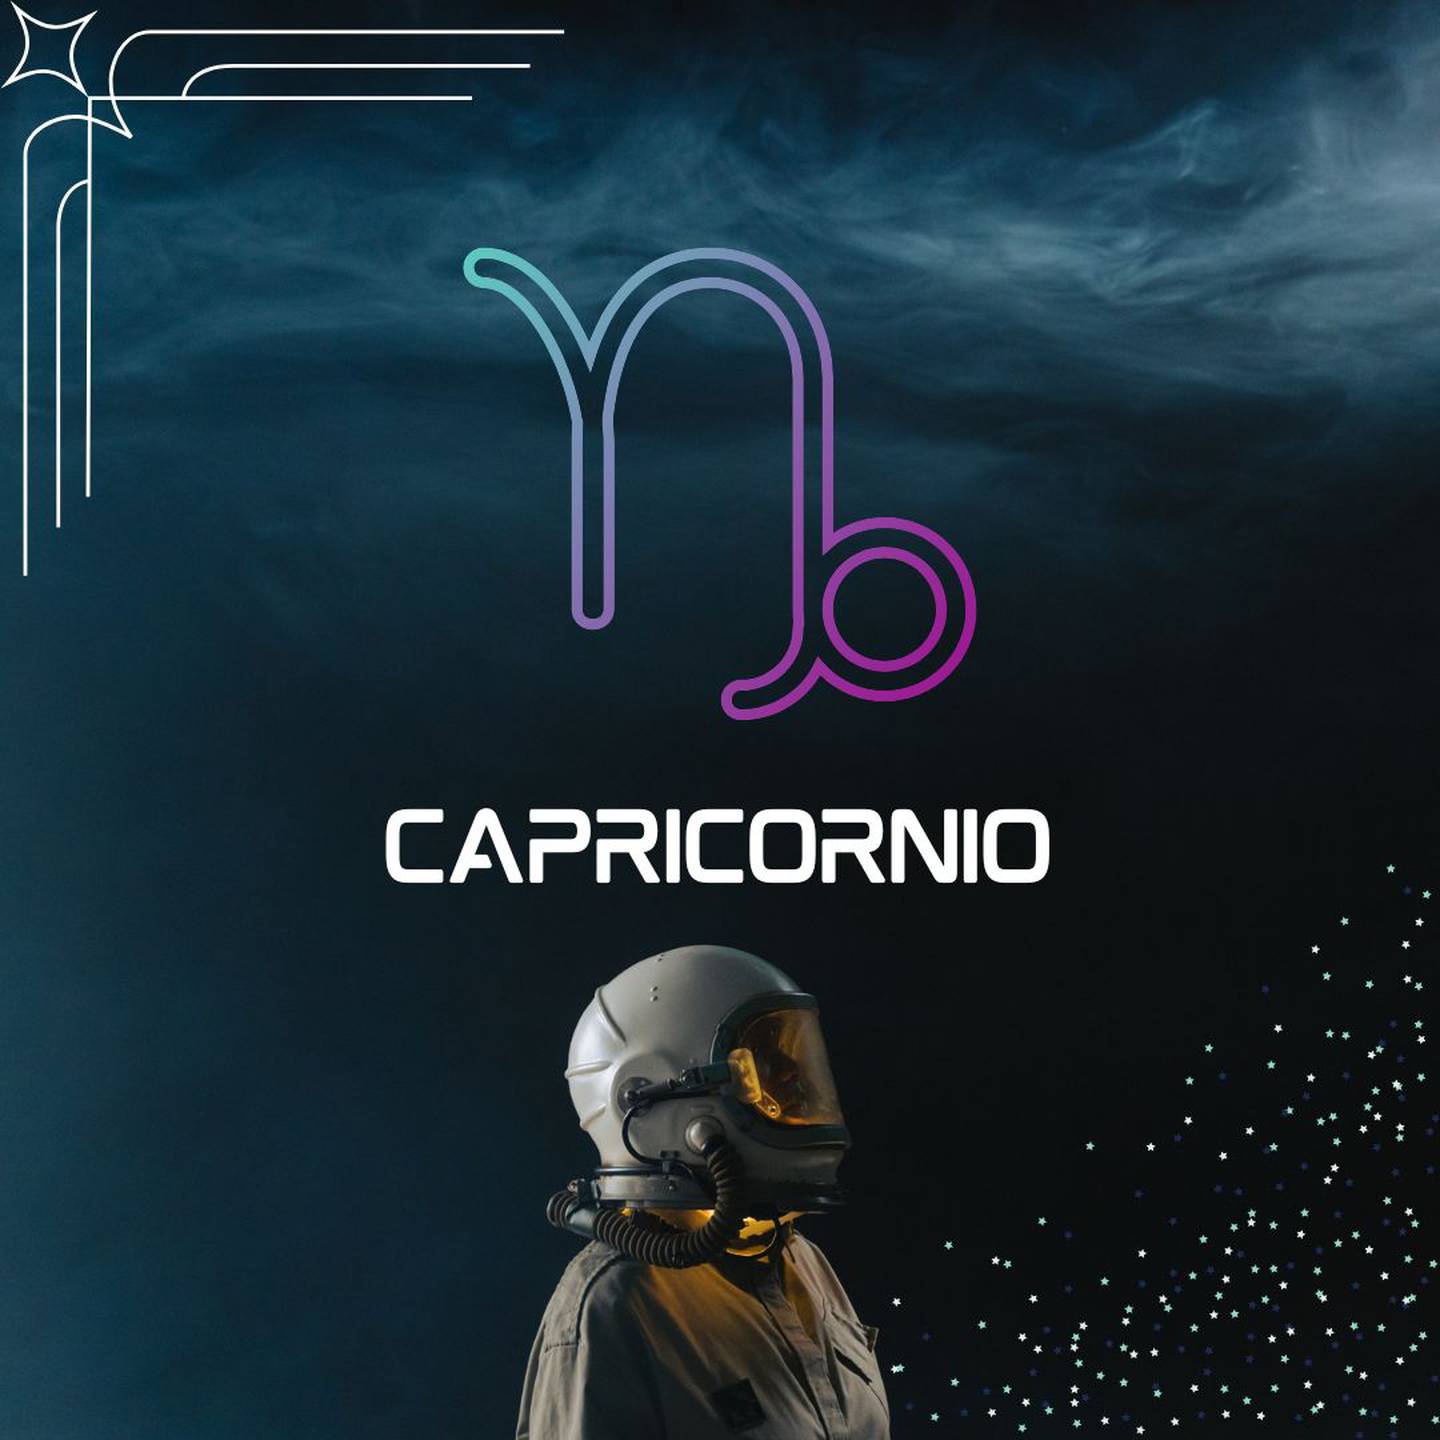 Sobre un fondo oscuro, con humo en la parte superior, aparece el símbolo de Capricornio. Al centro aparece el nombre del signo en color blanco y todavía más abajo, un astronauta está mirando hacia la derecha.